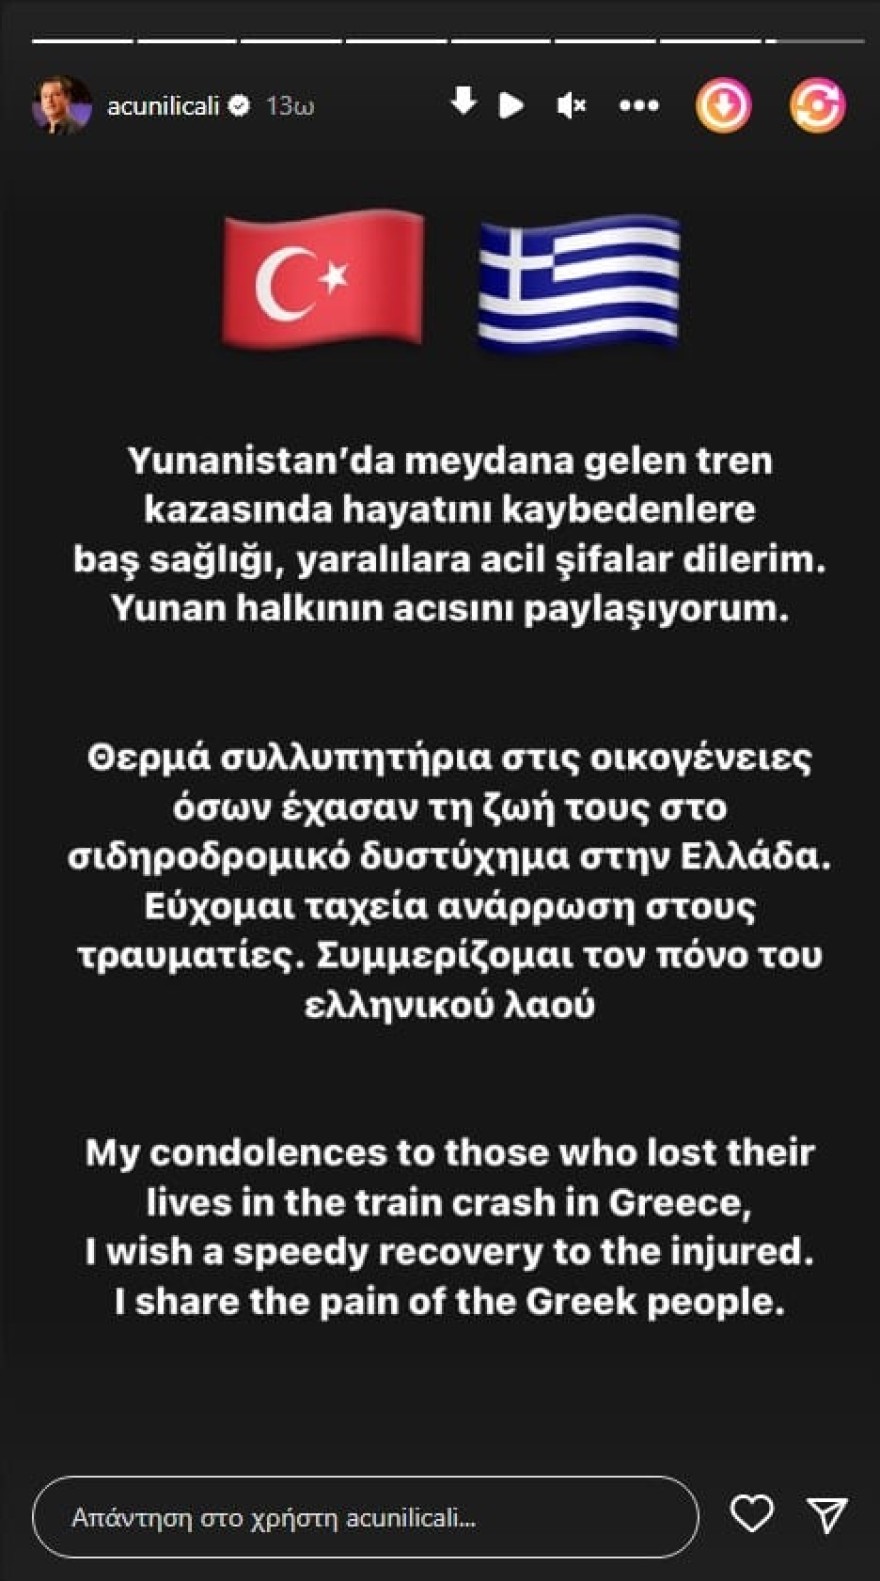 «Συμμερίζομαι τον πόνο του ελληνικού λαού» - Η συλλυπητήρια ανάρτηση του Ατζούν Ιλιτζαλί για την τραγωδία στα Τέμπη